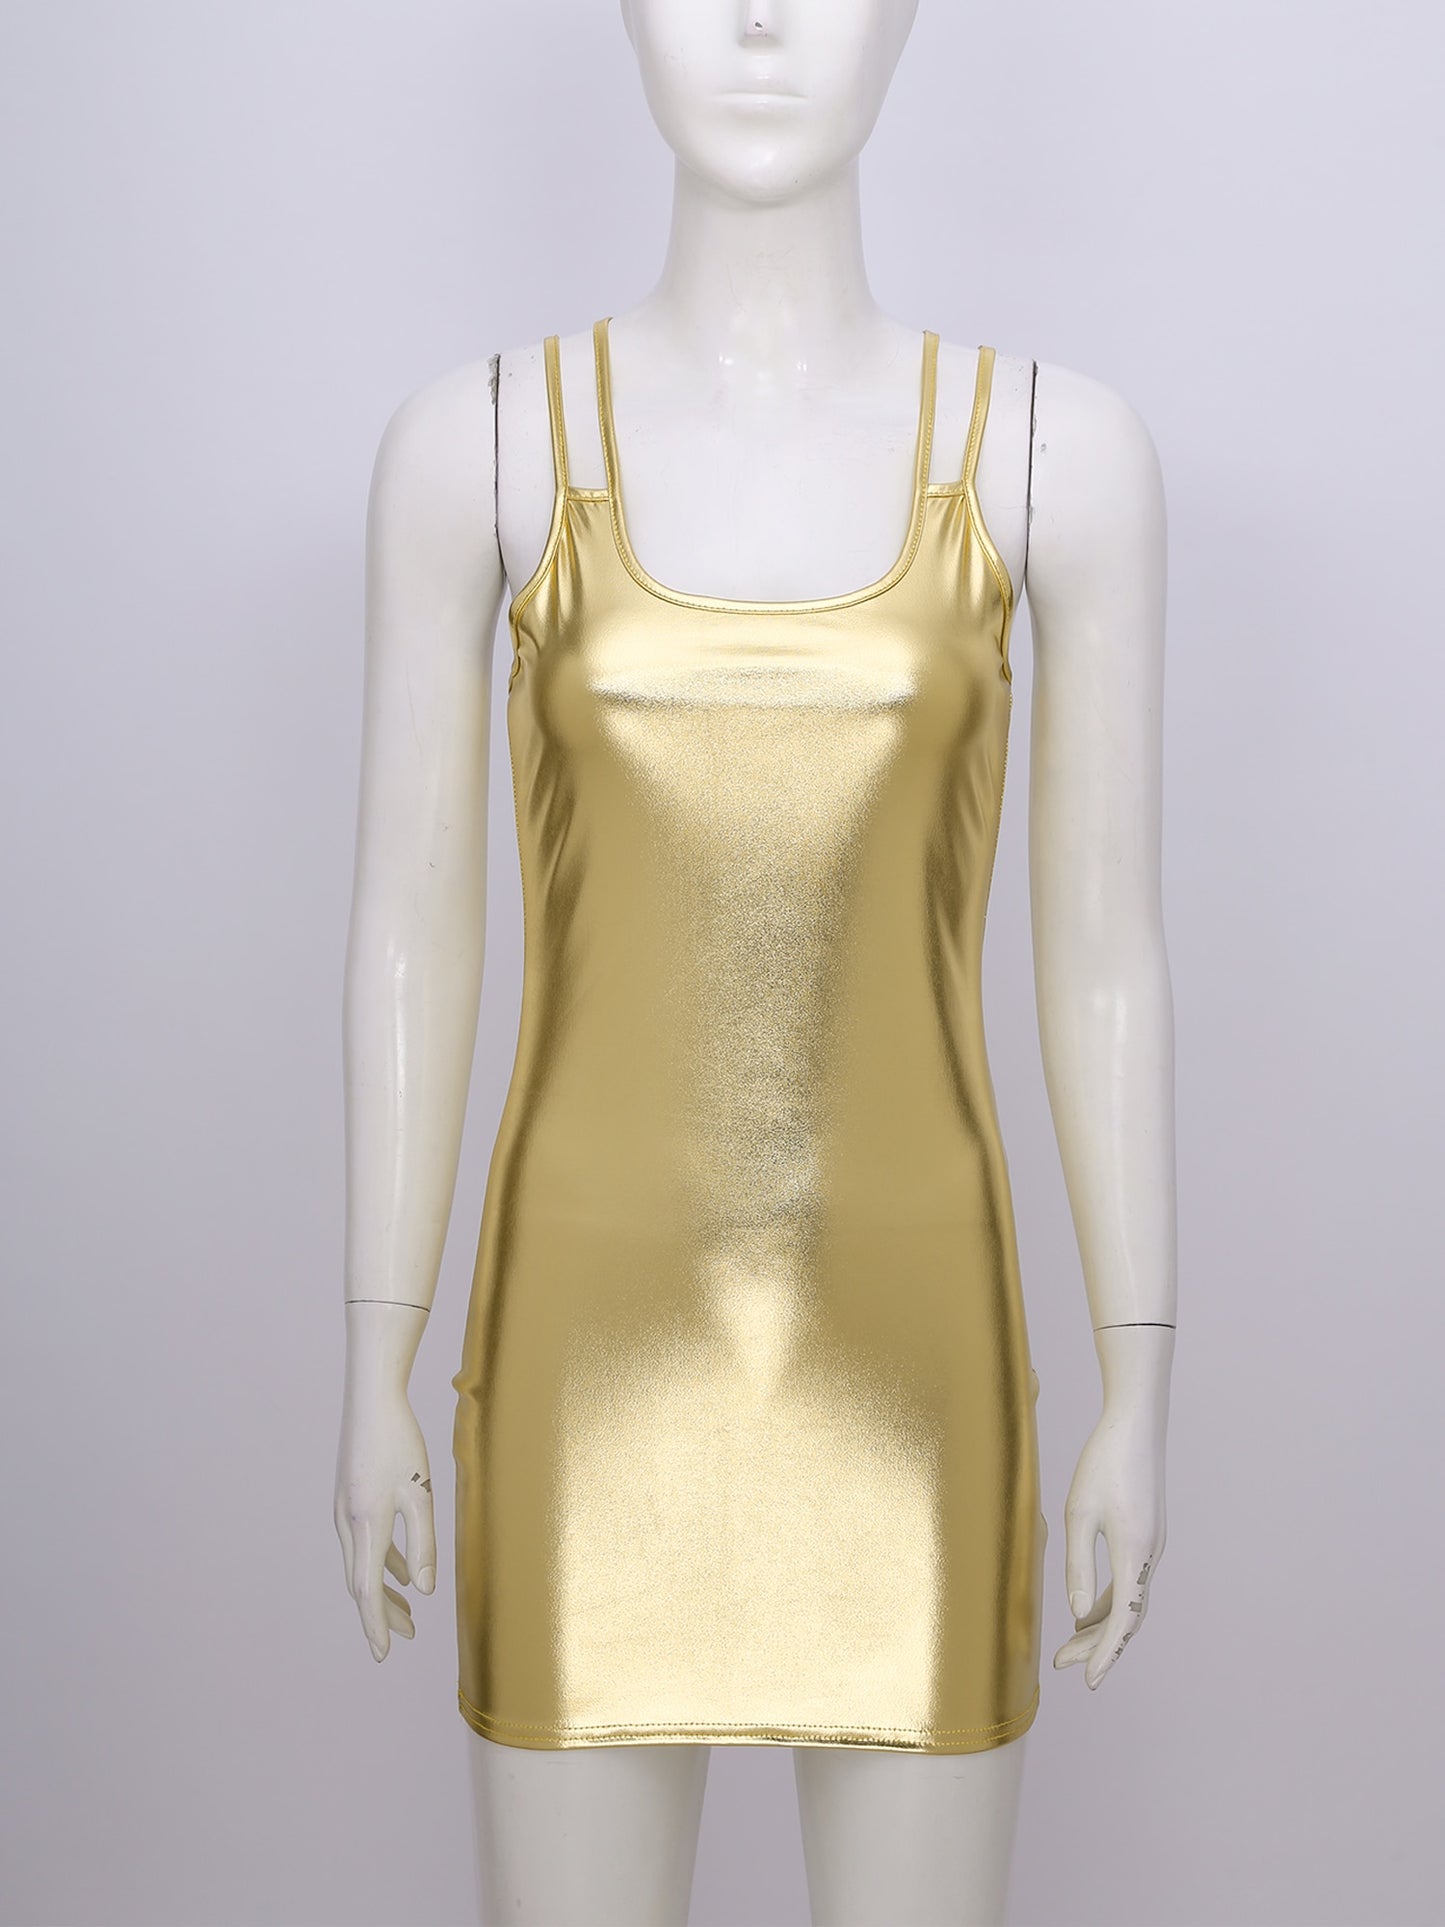 Damen Metallic Bodycon Minikleid | Glänzendes Lacklederkleid mit Spaghetti-Trägern | Clubwear und Party-Outfit - undergroundtechnostore.de